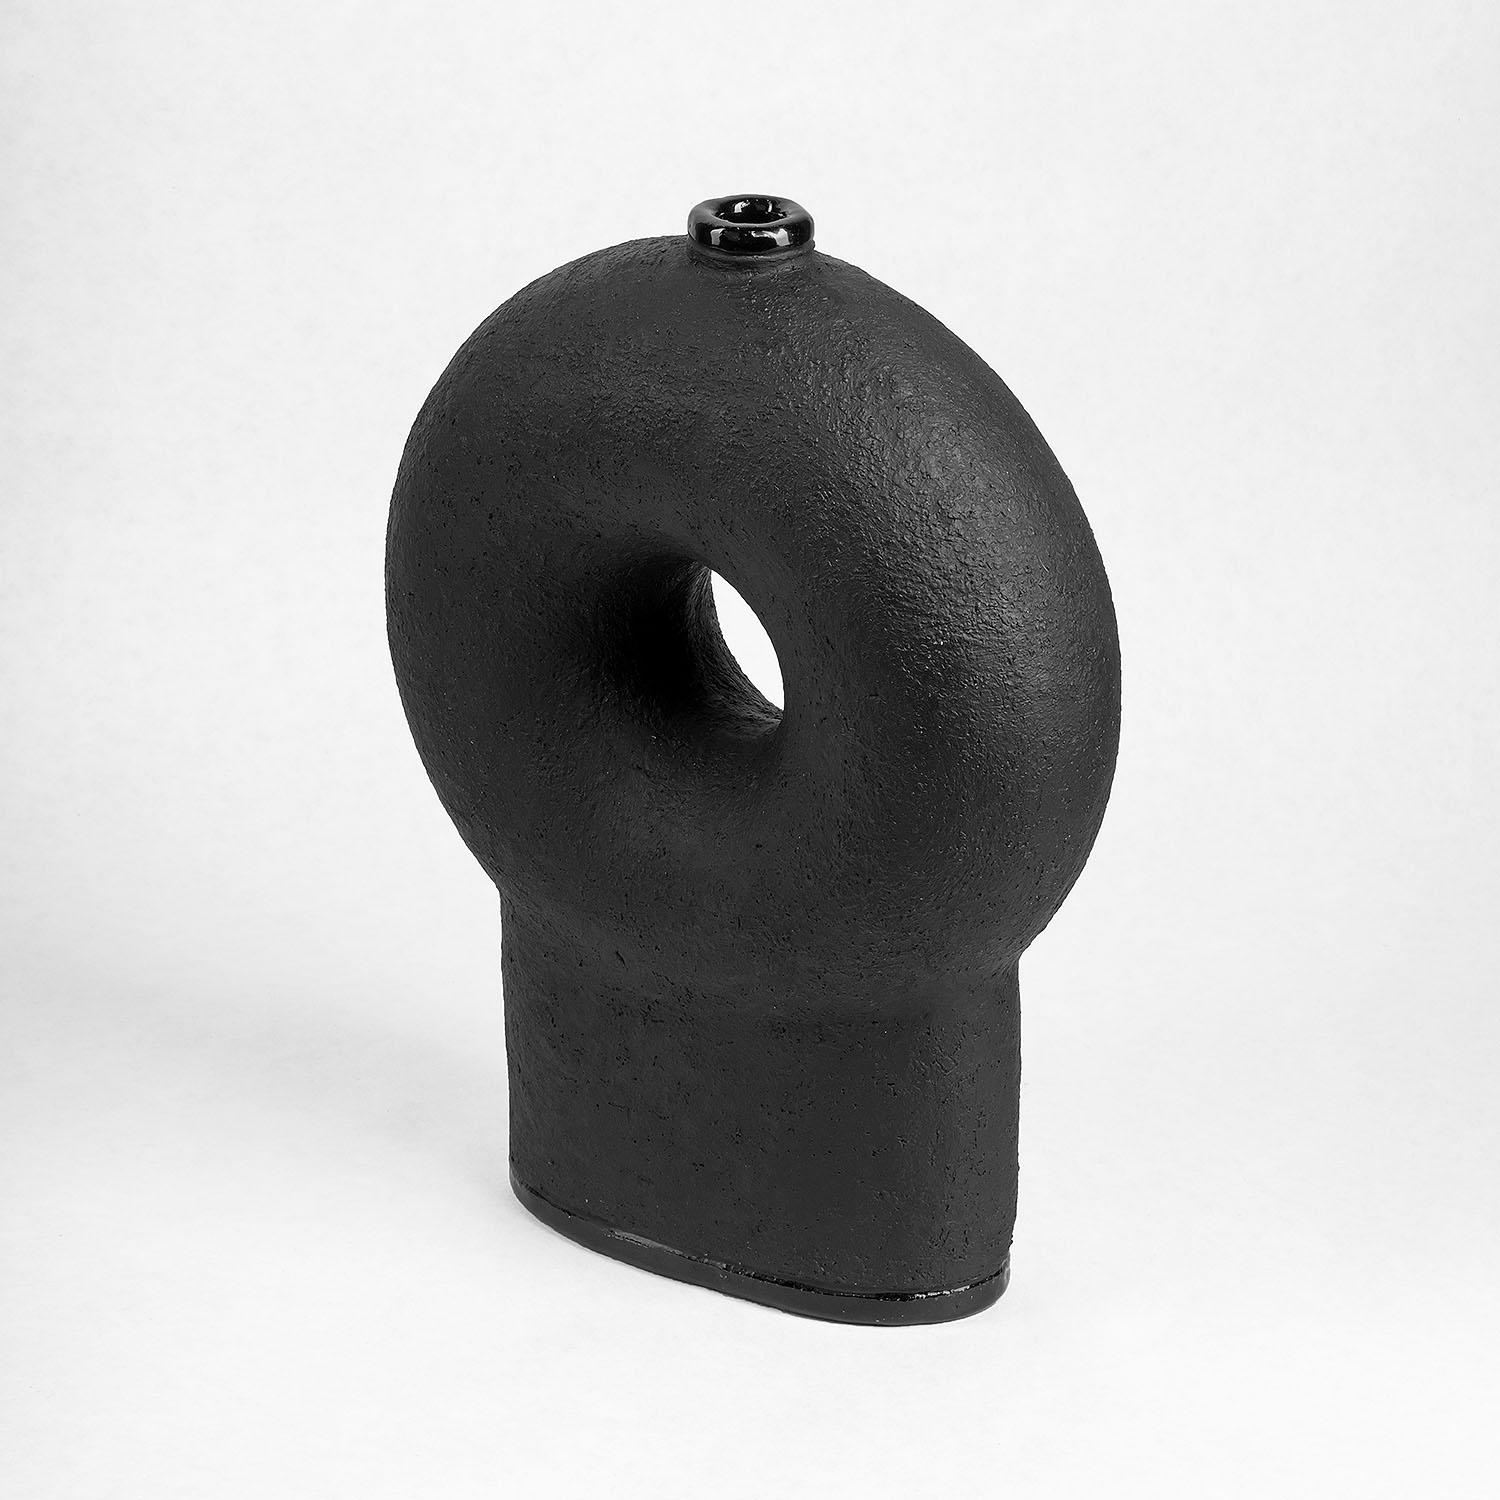 Zeitgenössische Vase aus schwarzer Keramik - Kumanec Vase mit zwei Beinen von Faina

Entwurf: Victoriya Yakusha
MATERIAL: Material: Ton/Keramik
Abmessungen: 10,7 x 24 x 33 cm


(